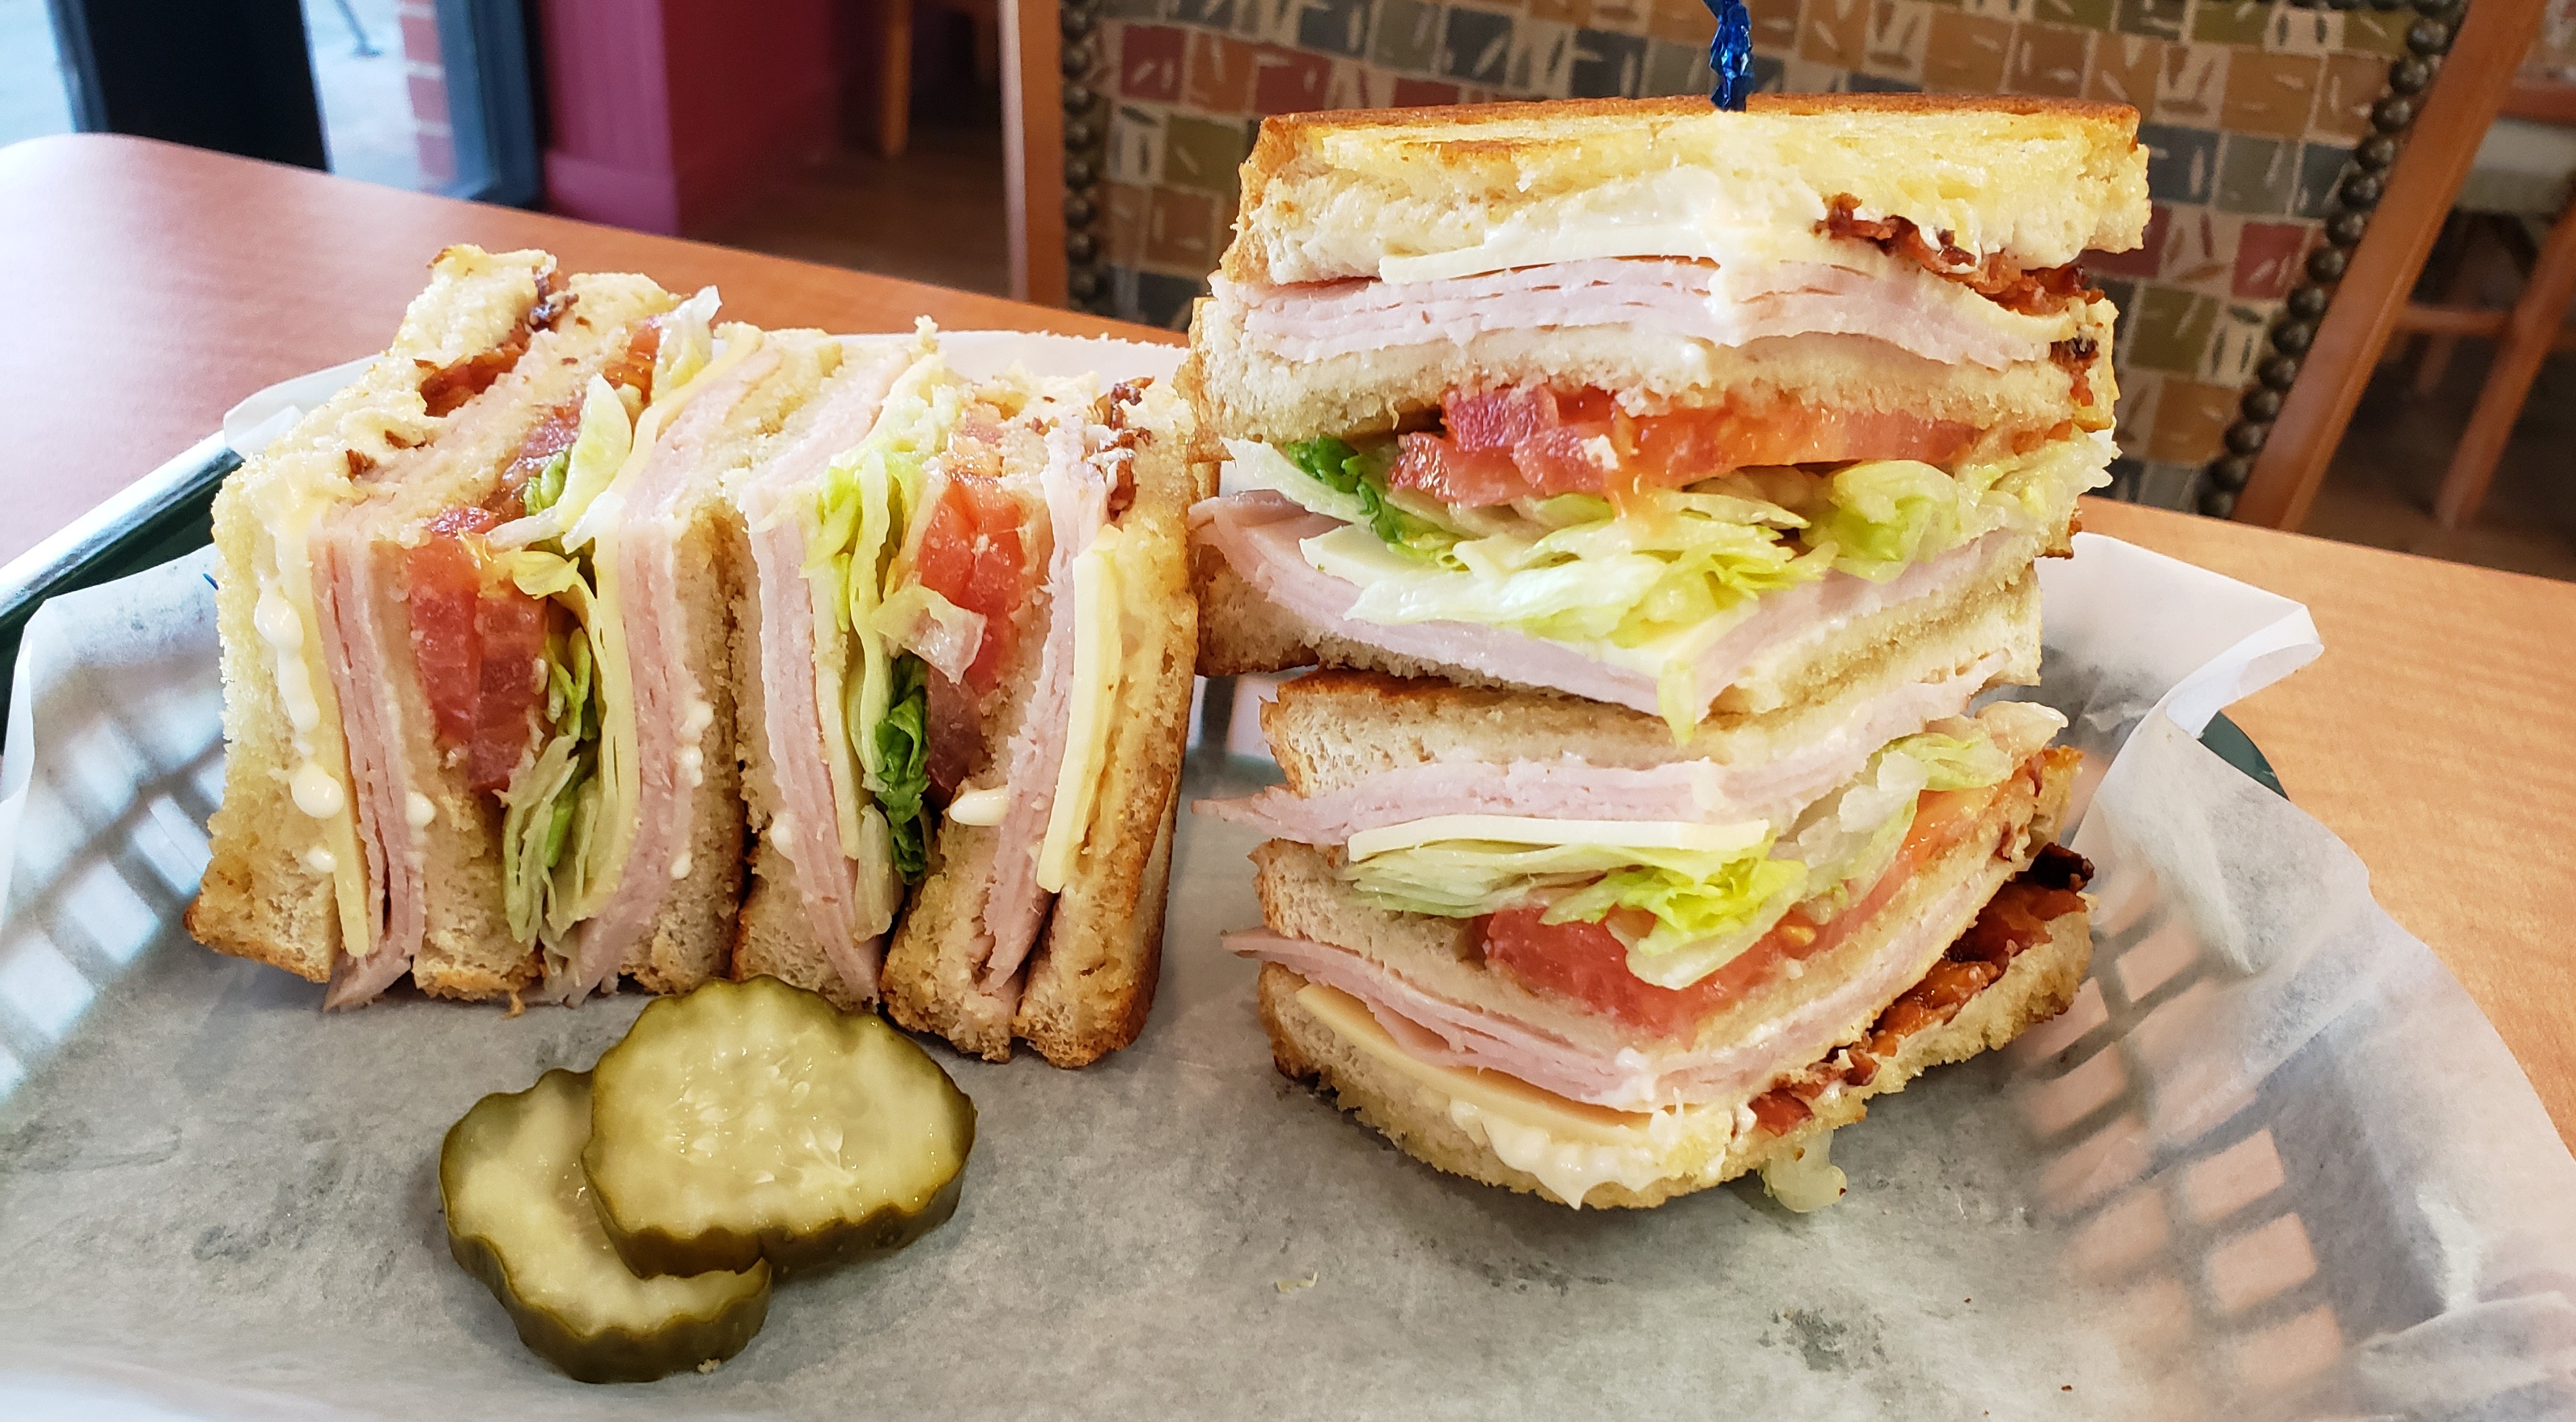 Turkey Club Sandwich, $7.00 